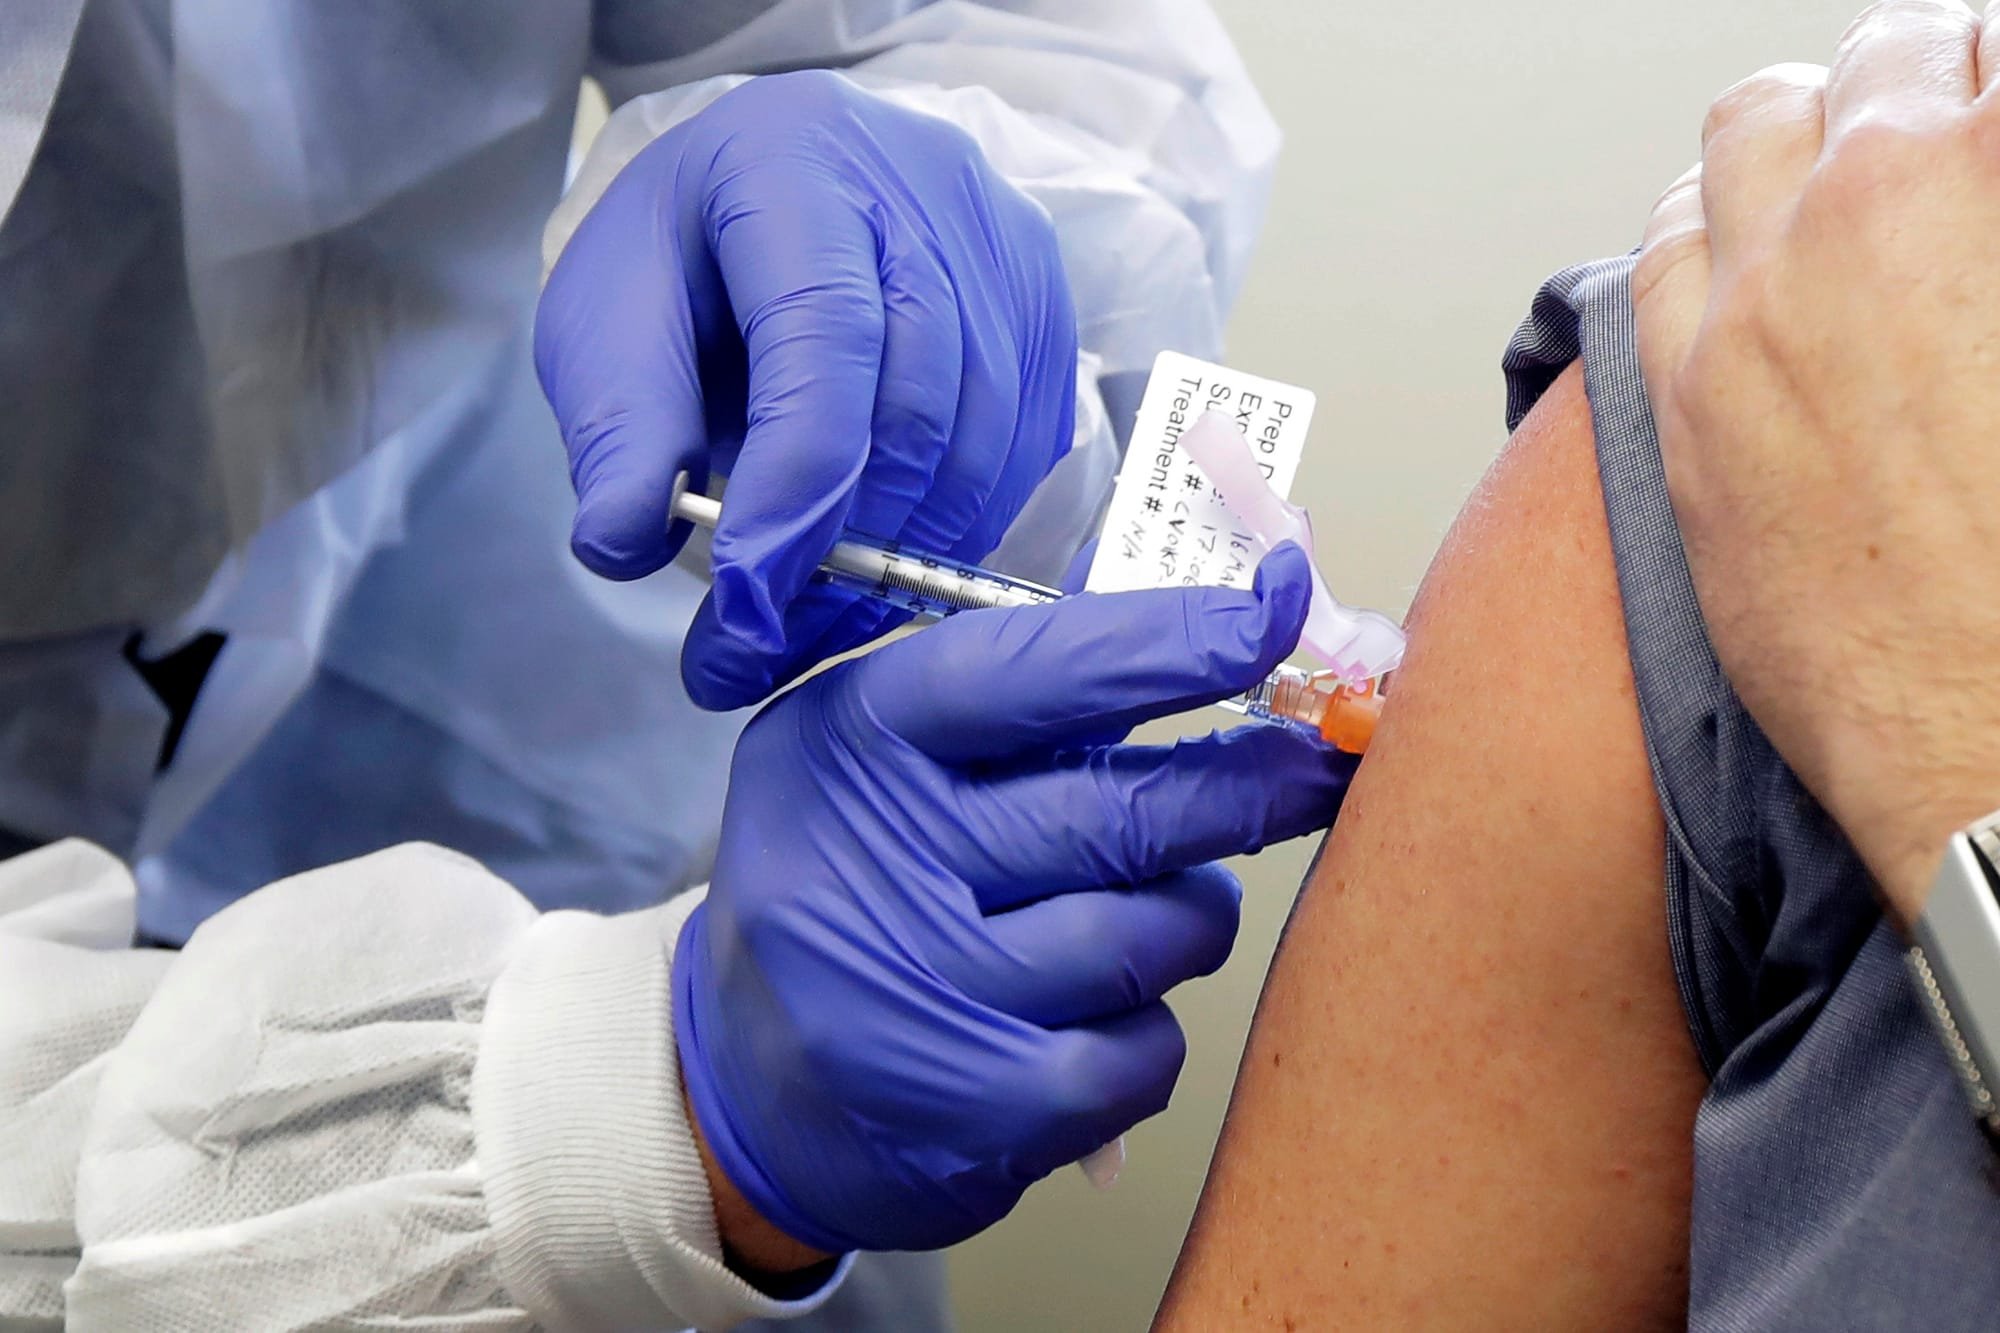 خبراء صحة: "القلق" وراء الشعور بالأعراض الجانبية للقاحات كورونا